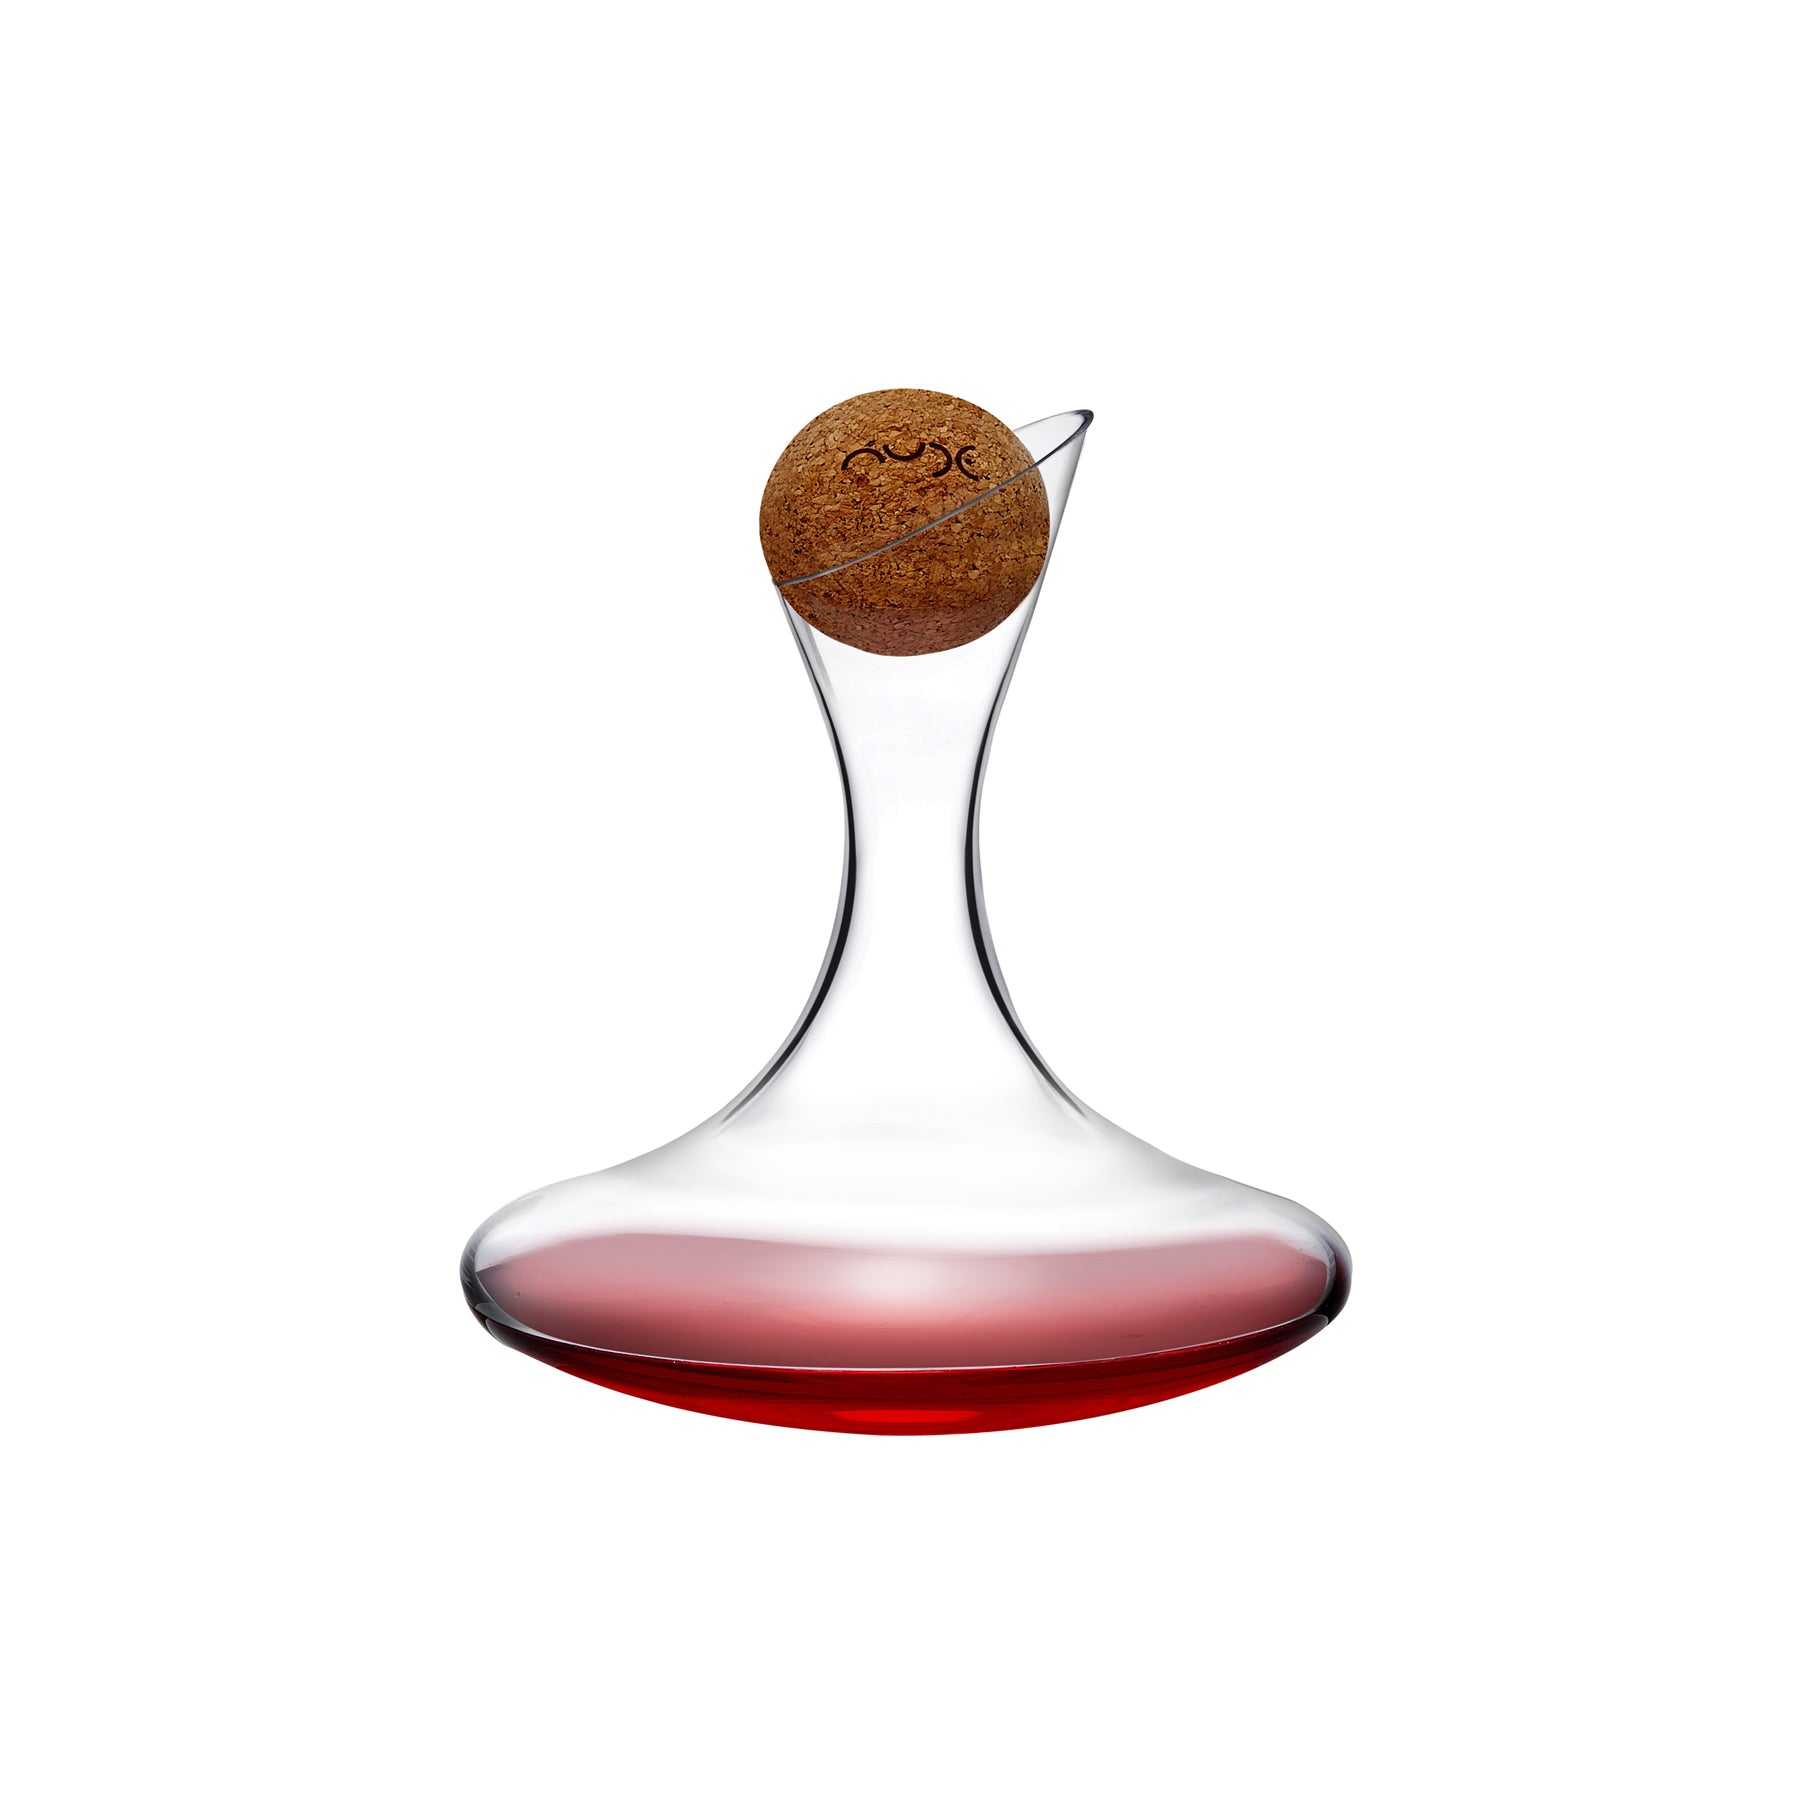 Decanter per vino Oxygen con tappo in sughero – NUDE EU